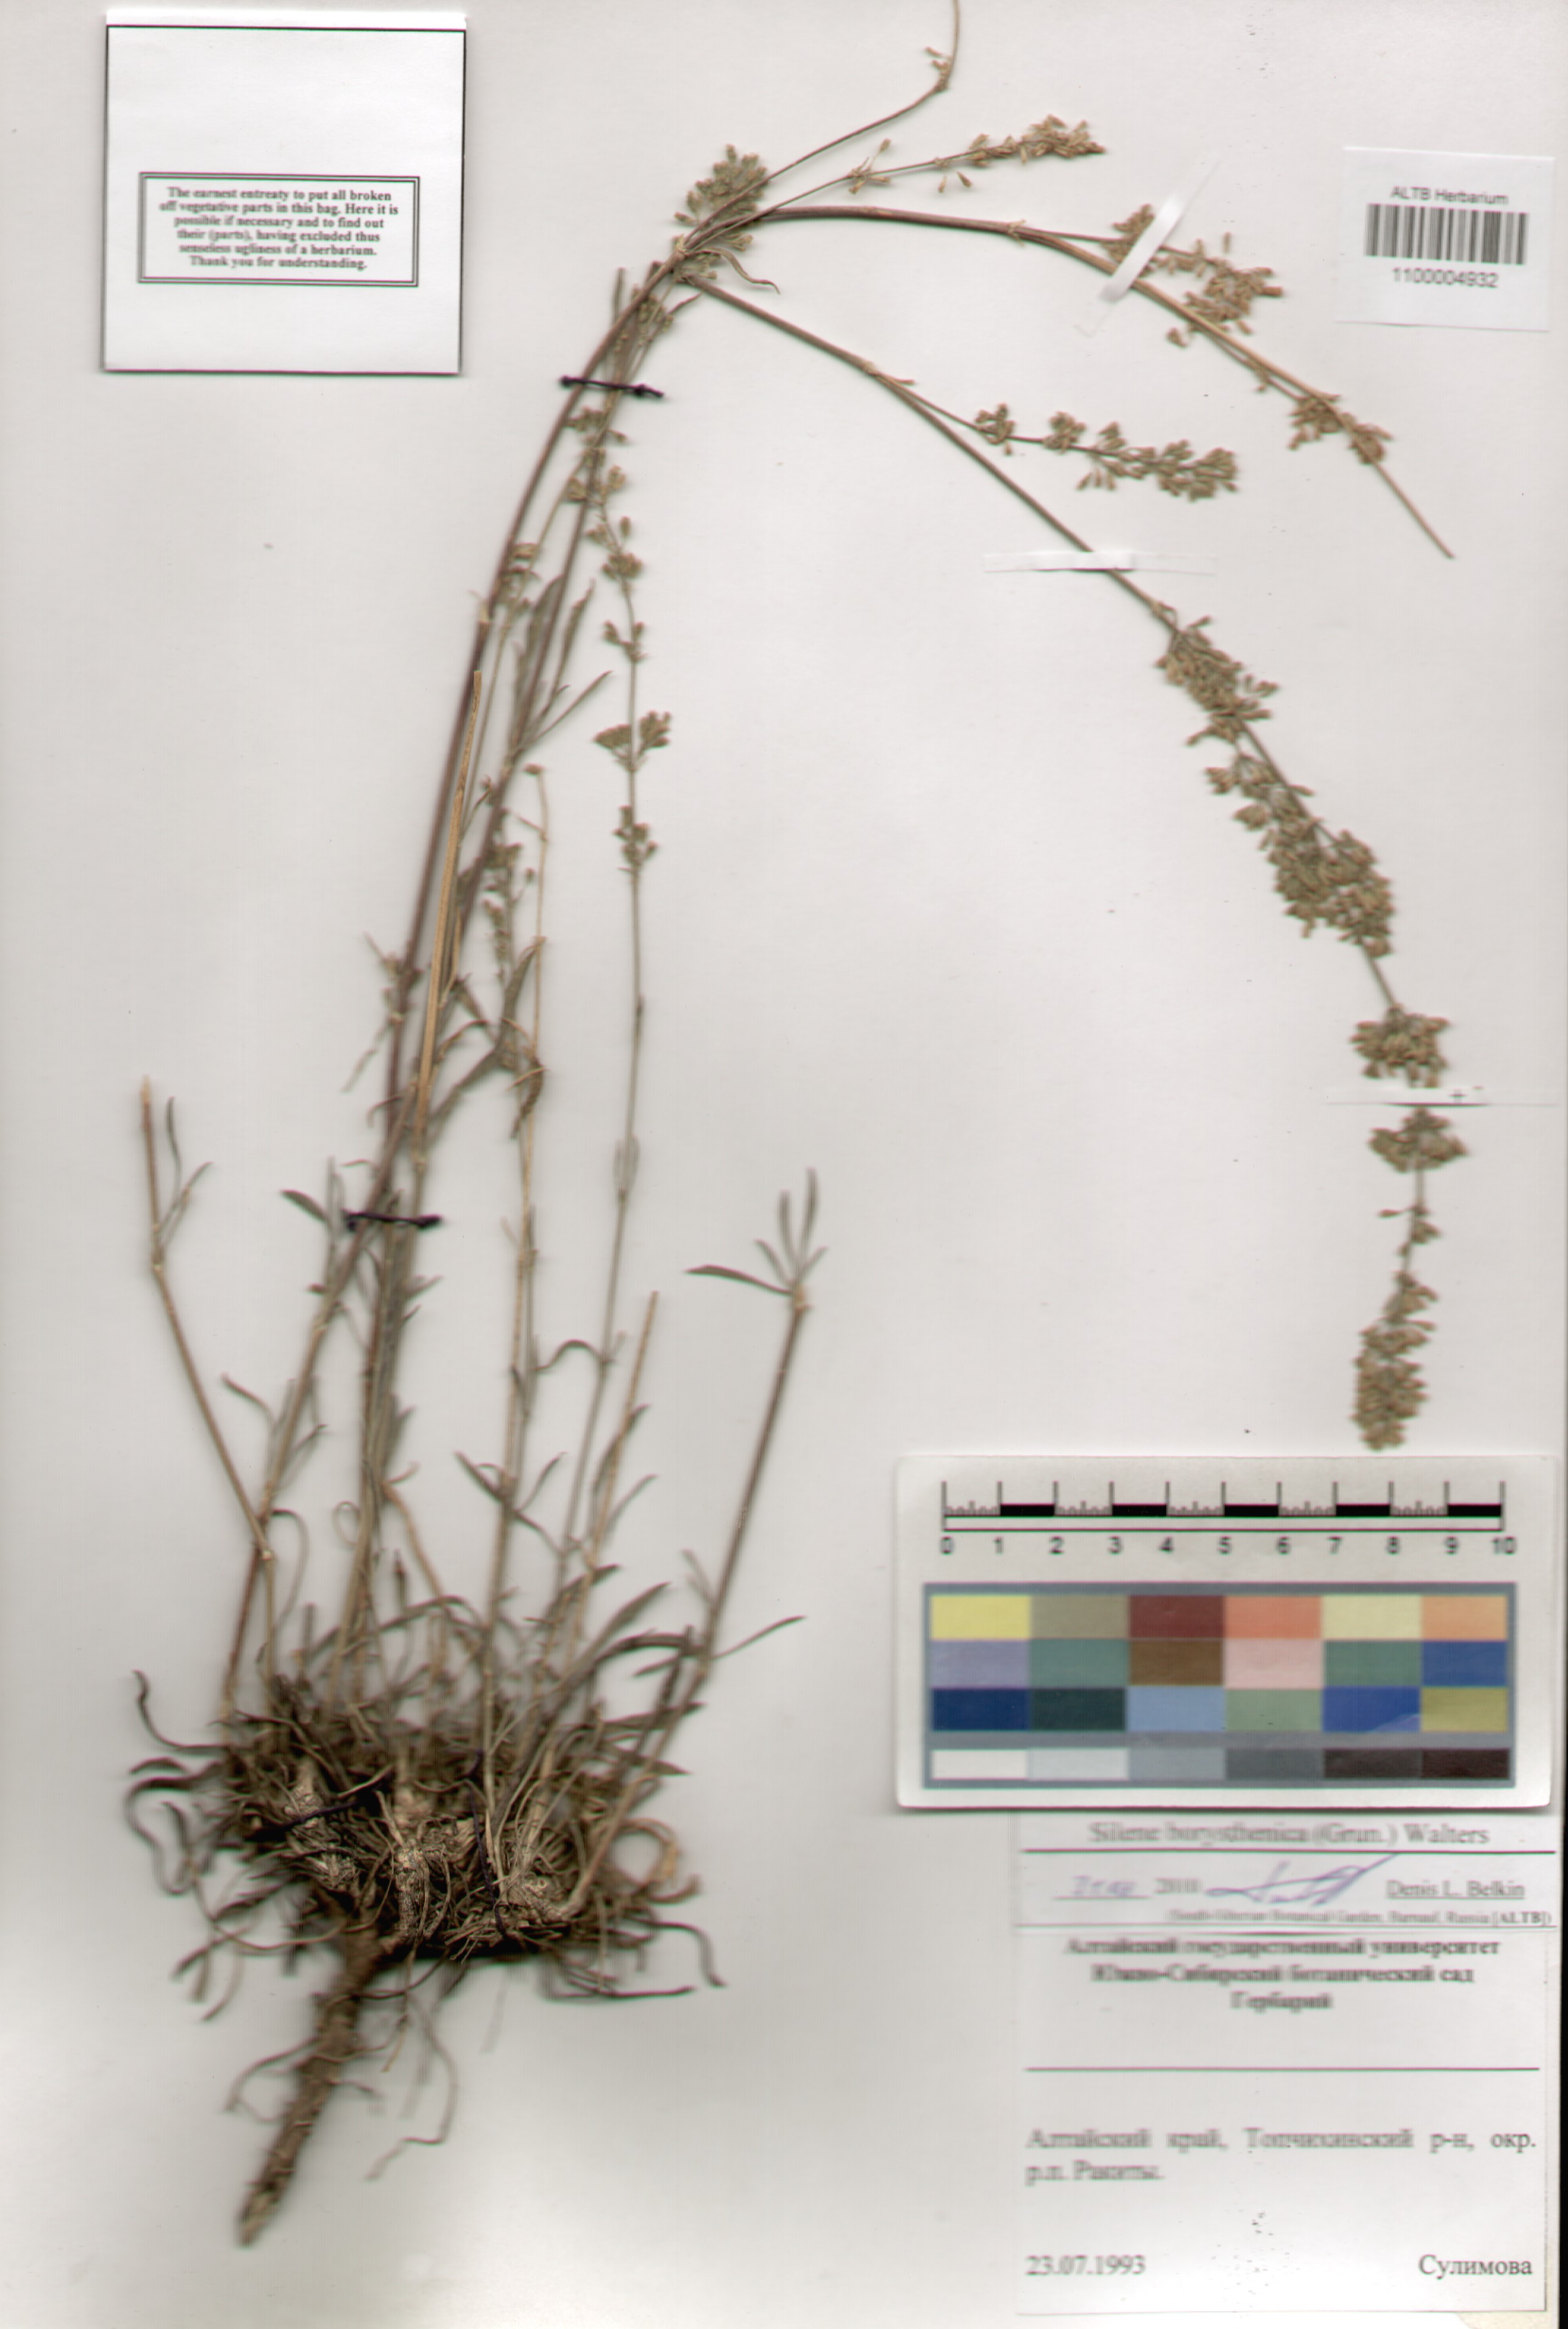 Caryophyllaceae,Silene borysthenica (Grun.) Walters